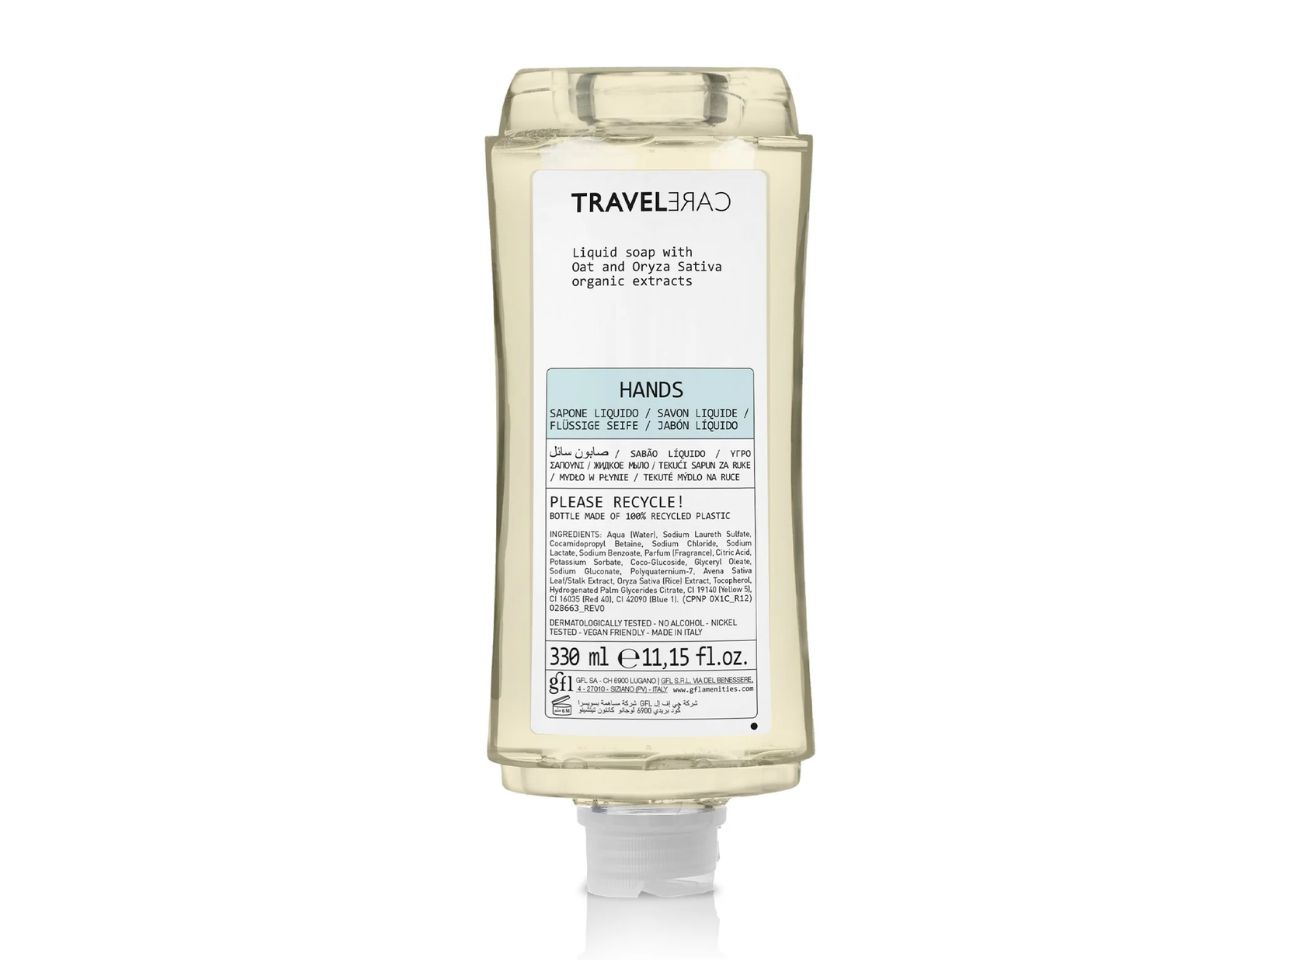 Travelcare Feuchtigkeitscreme - Spenderflasche 330 ml aus recyceltem PET